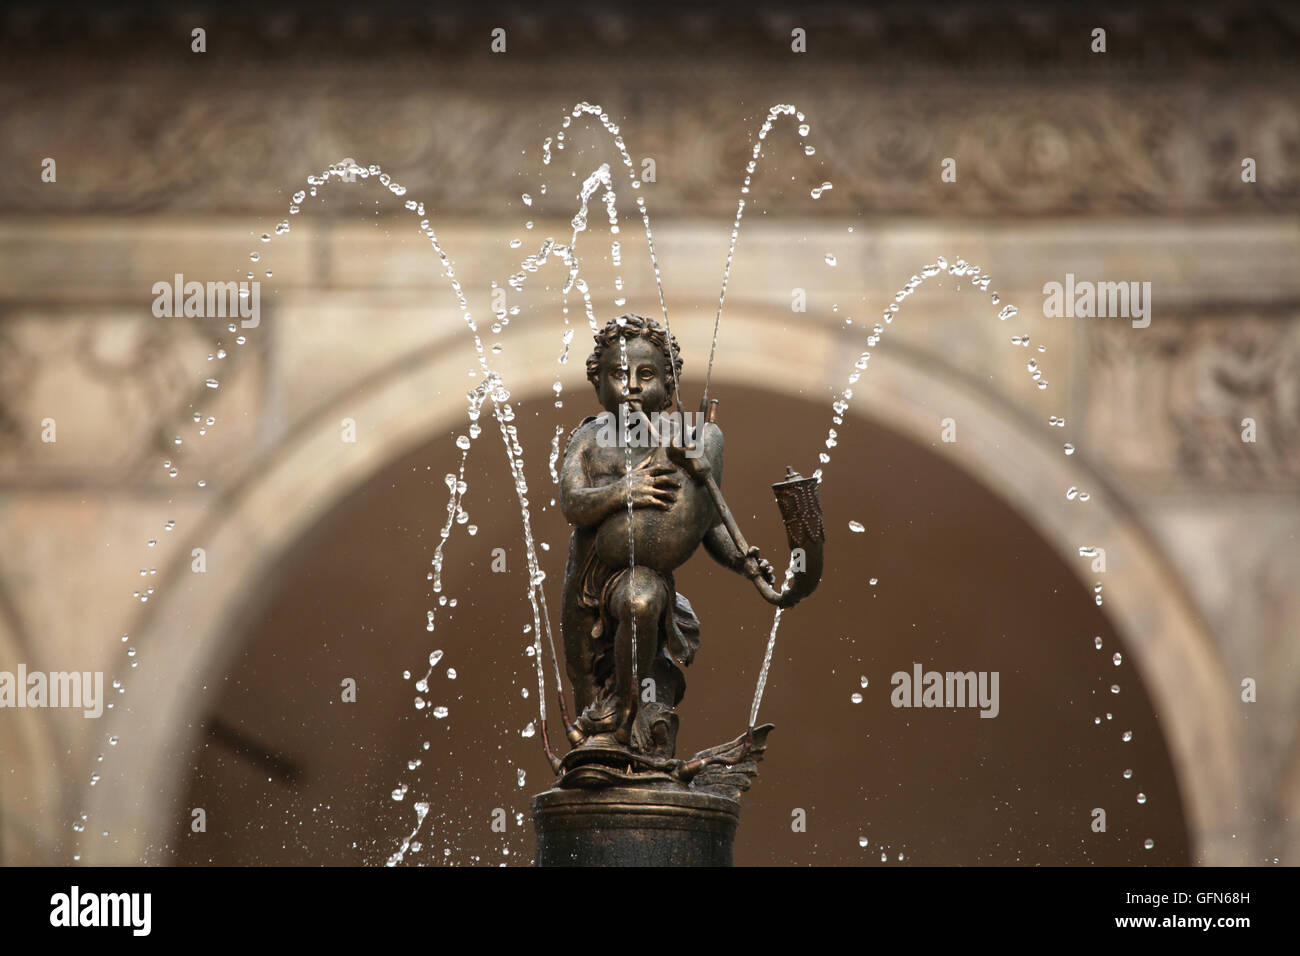 Garçon jouant de la cornemuse (1568). Détail de la fontaine chantante dans le jardin royal du Château de Prague à Prague, République tchèque. Banque D'Images